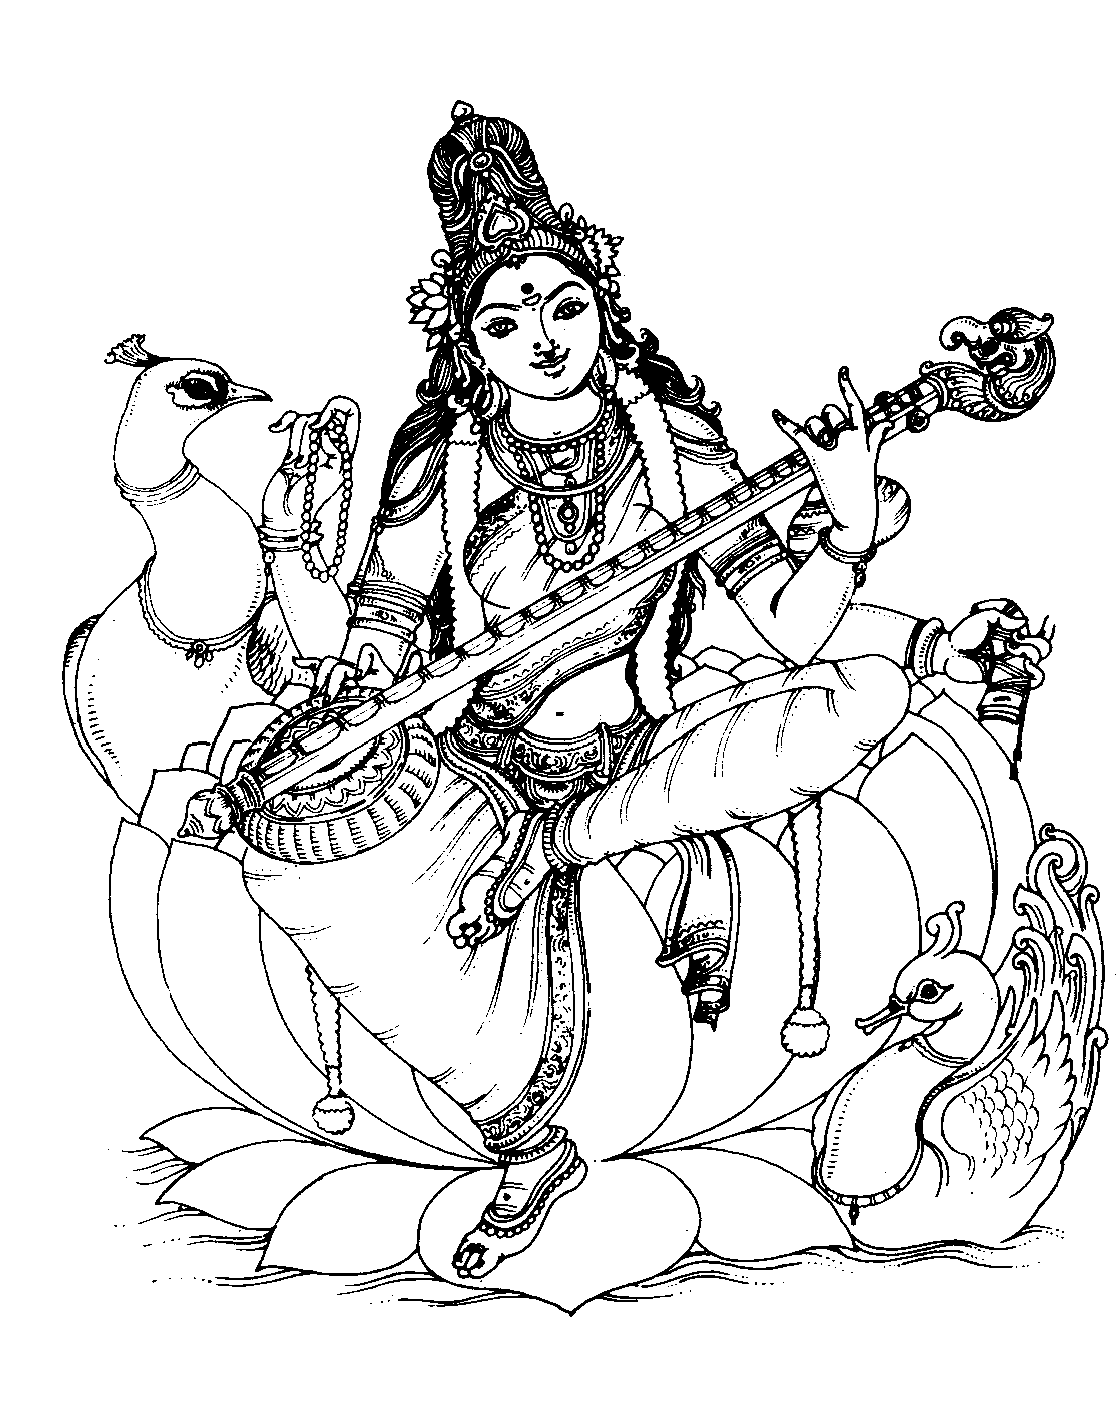 India saraswati - 1 - Image with : Couple, Guitar, Music, Woman, Saraswati